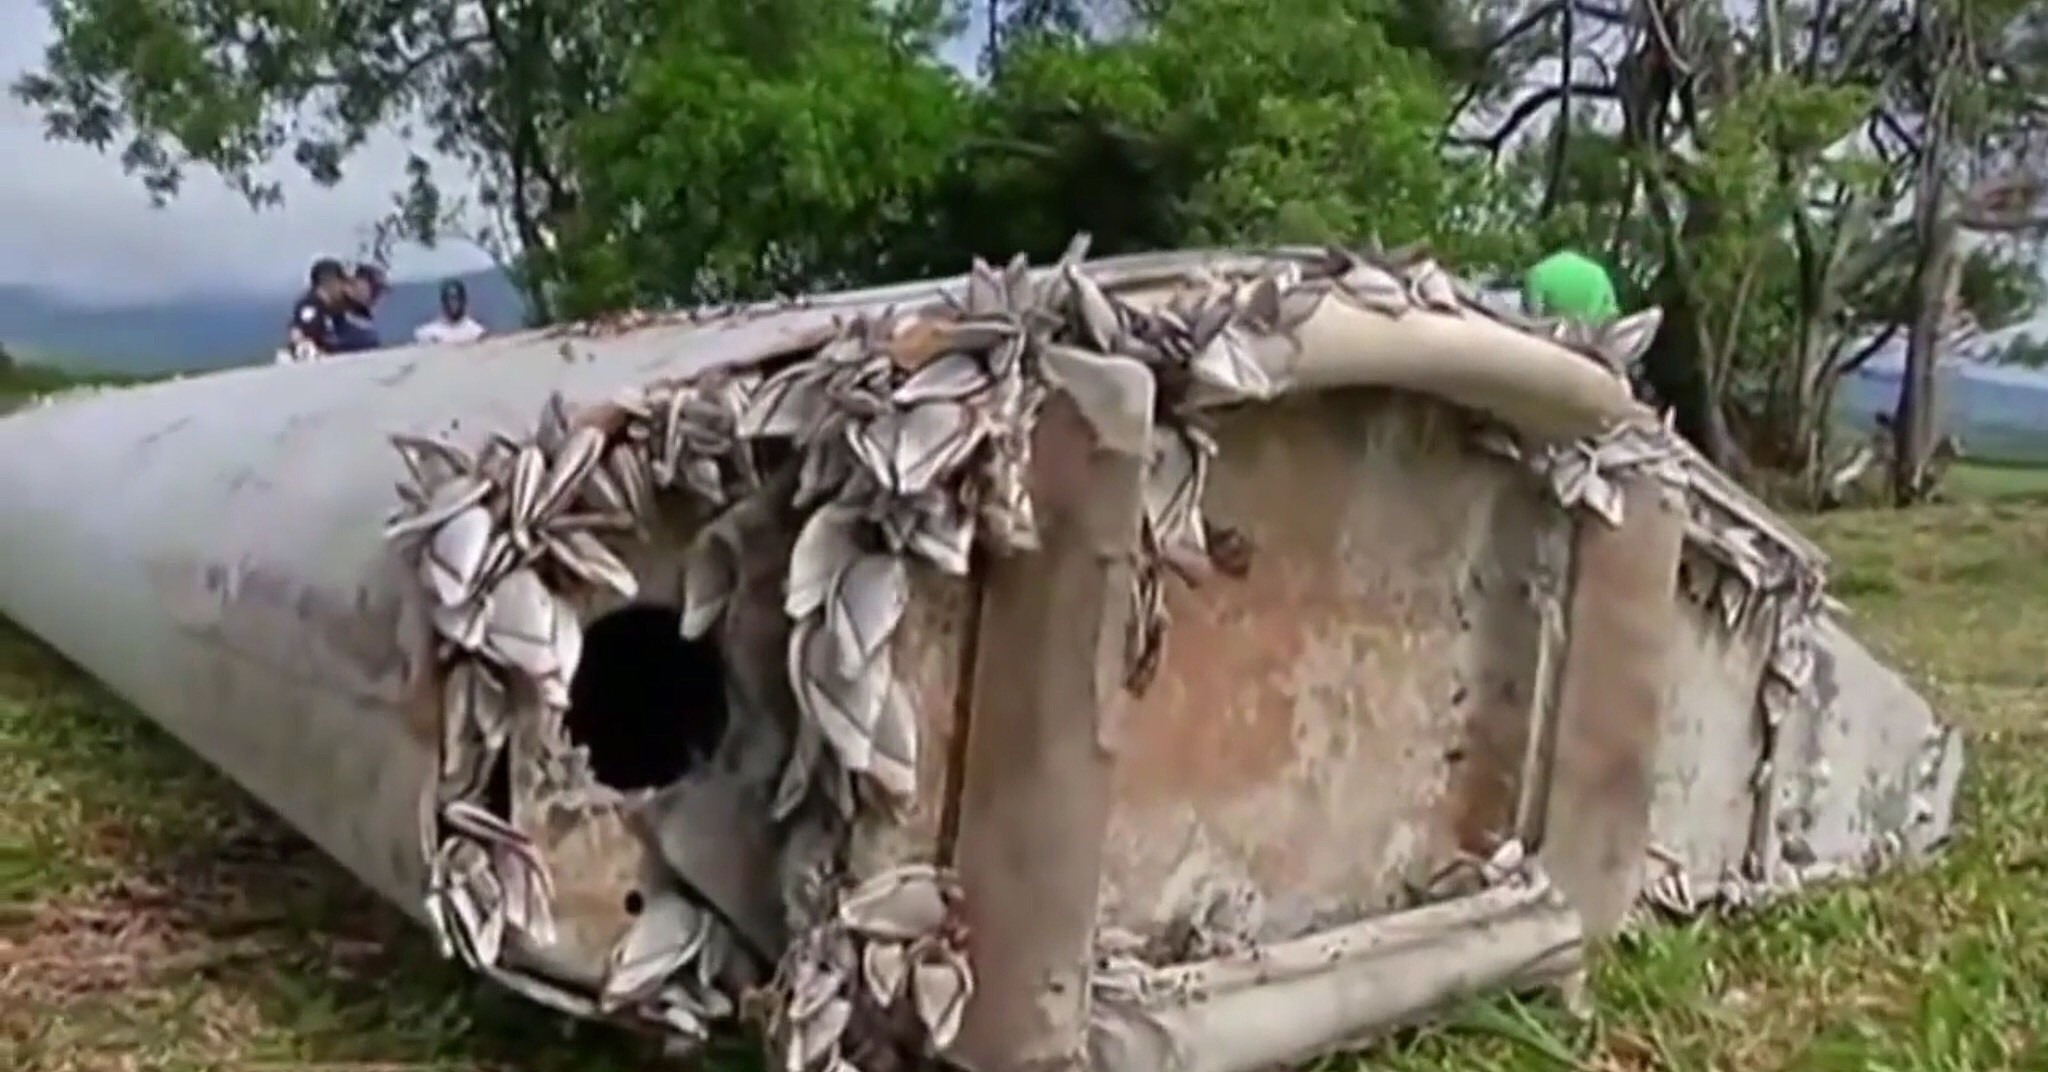 （视频截图）当地时间2015年7月29日，位于印度洋西南端的法属留尼汪岛发现疑似MH370残骸机翼残骸，当地居民称这块残骸长达2米，是在清理海滩时发现的，目击者称残骸表面覆盖有贝壳，显然在水中浸泡过很长时间。